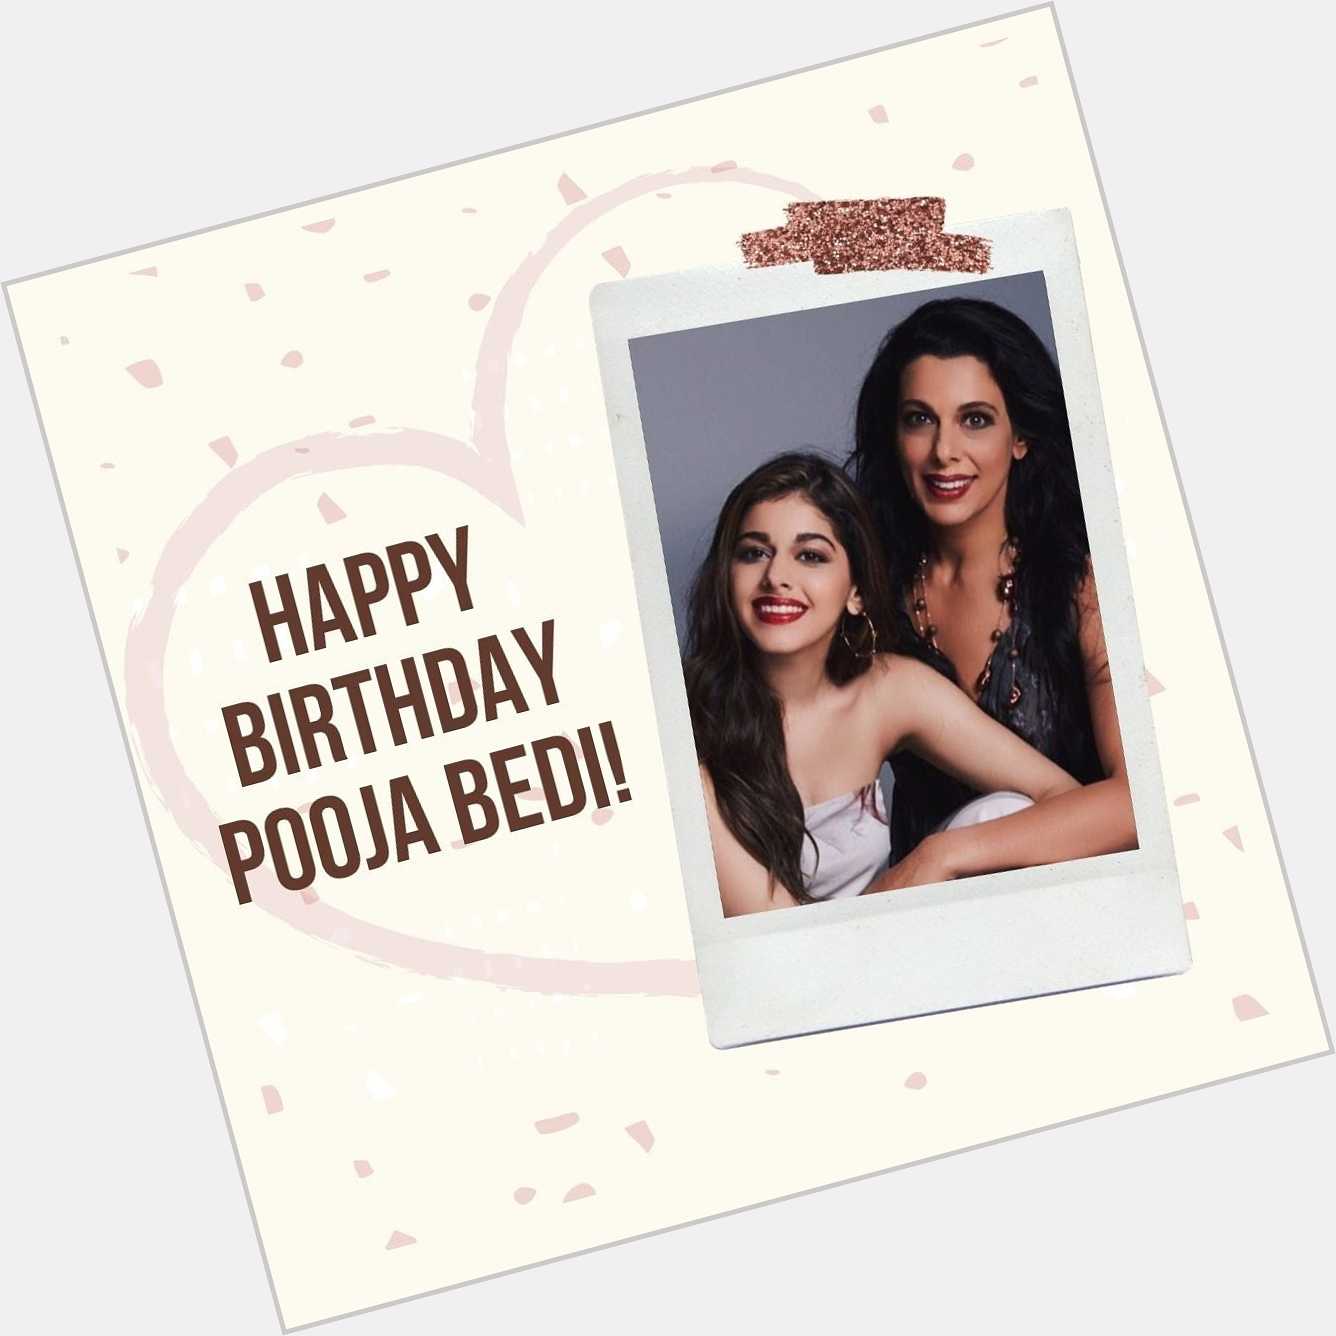 Wishing Pooja Bedi a very Happy Birthday    .
.   